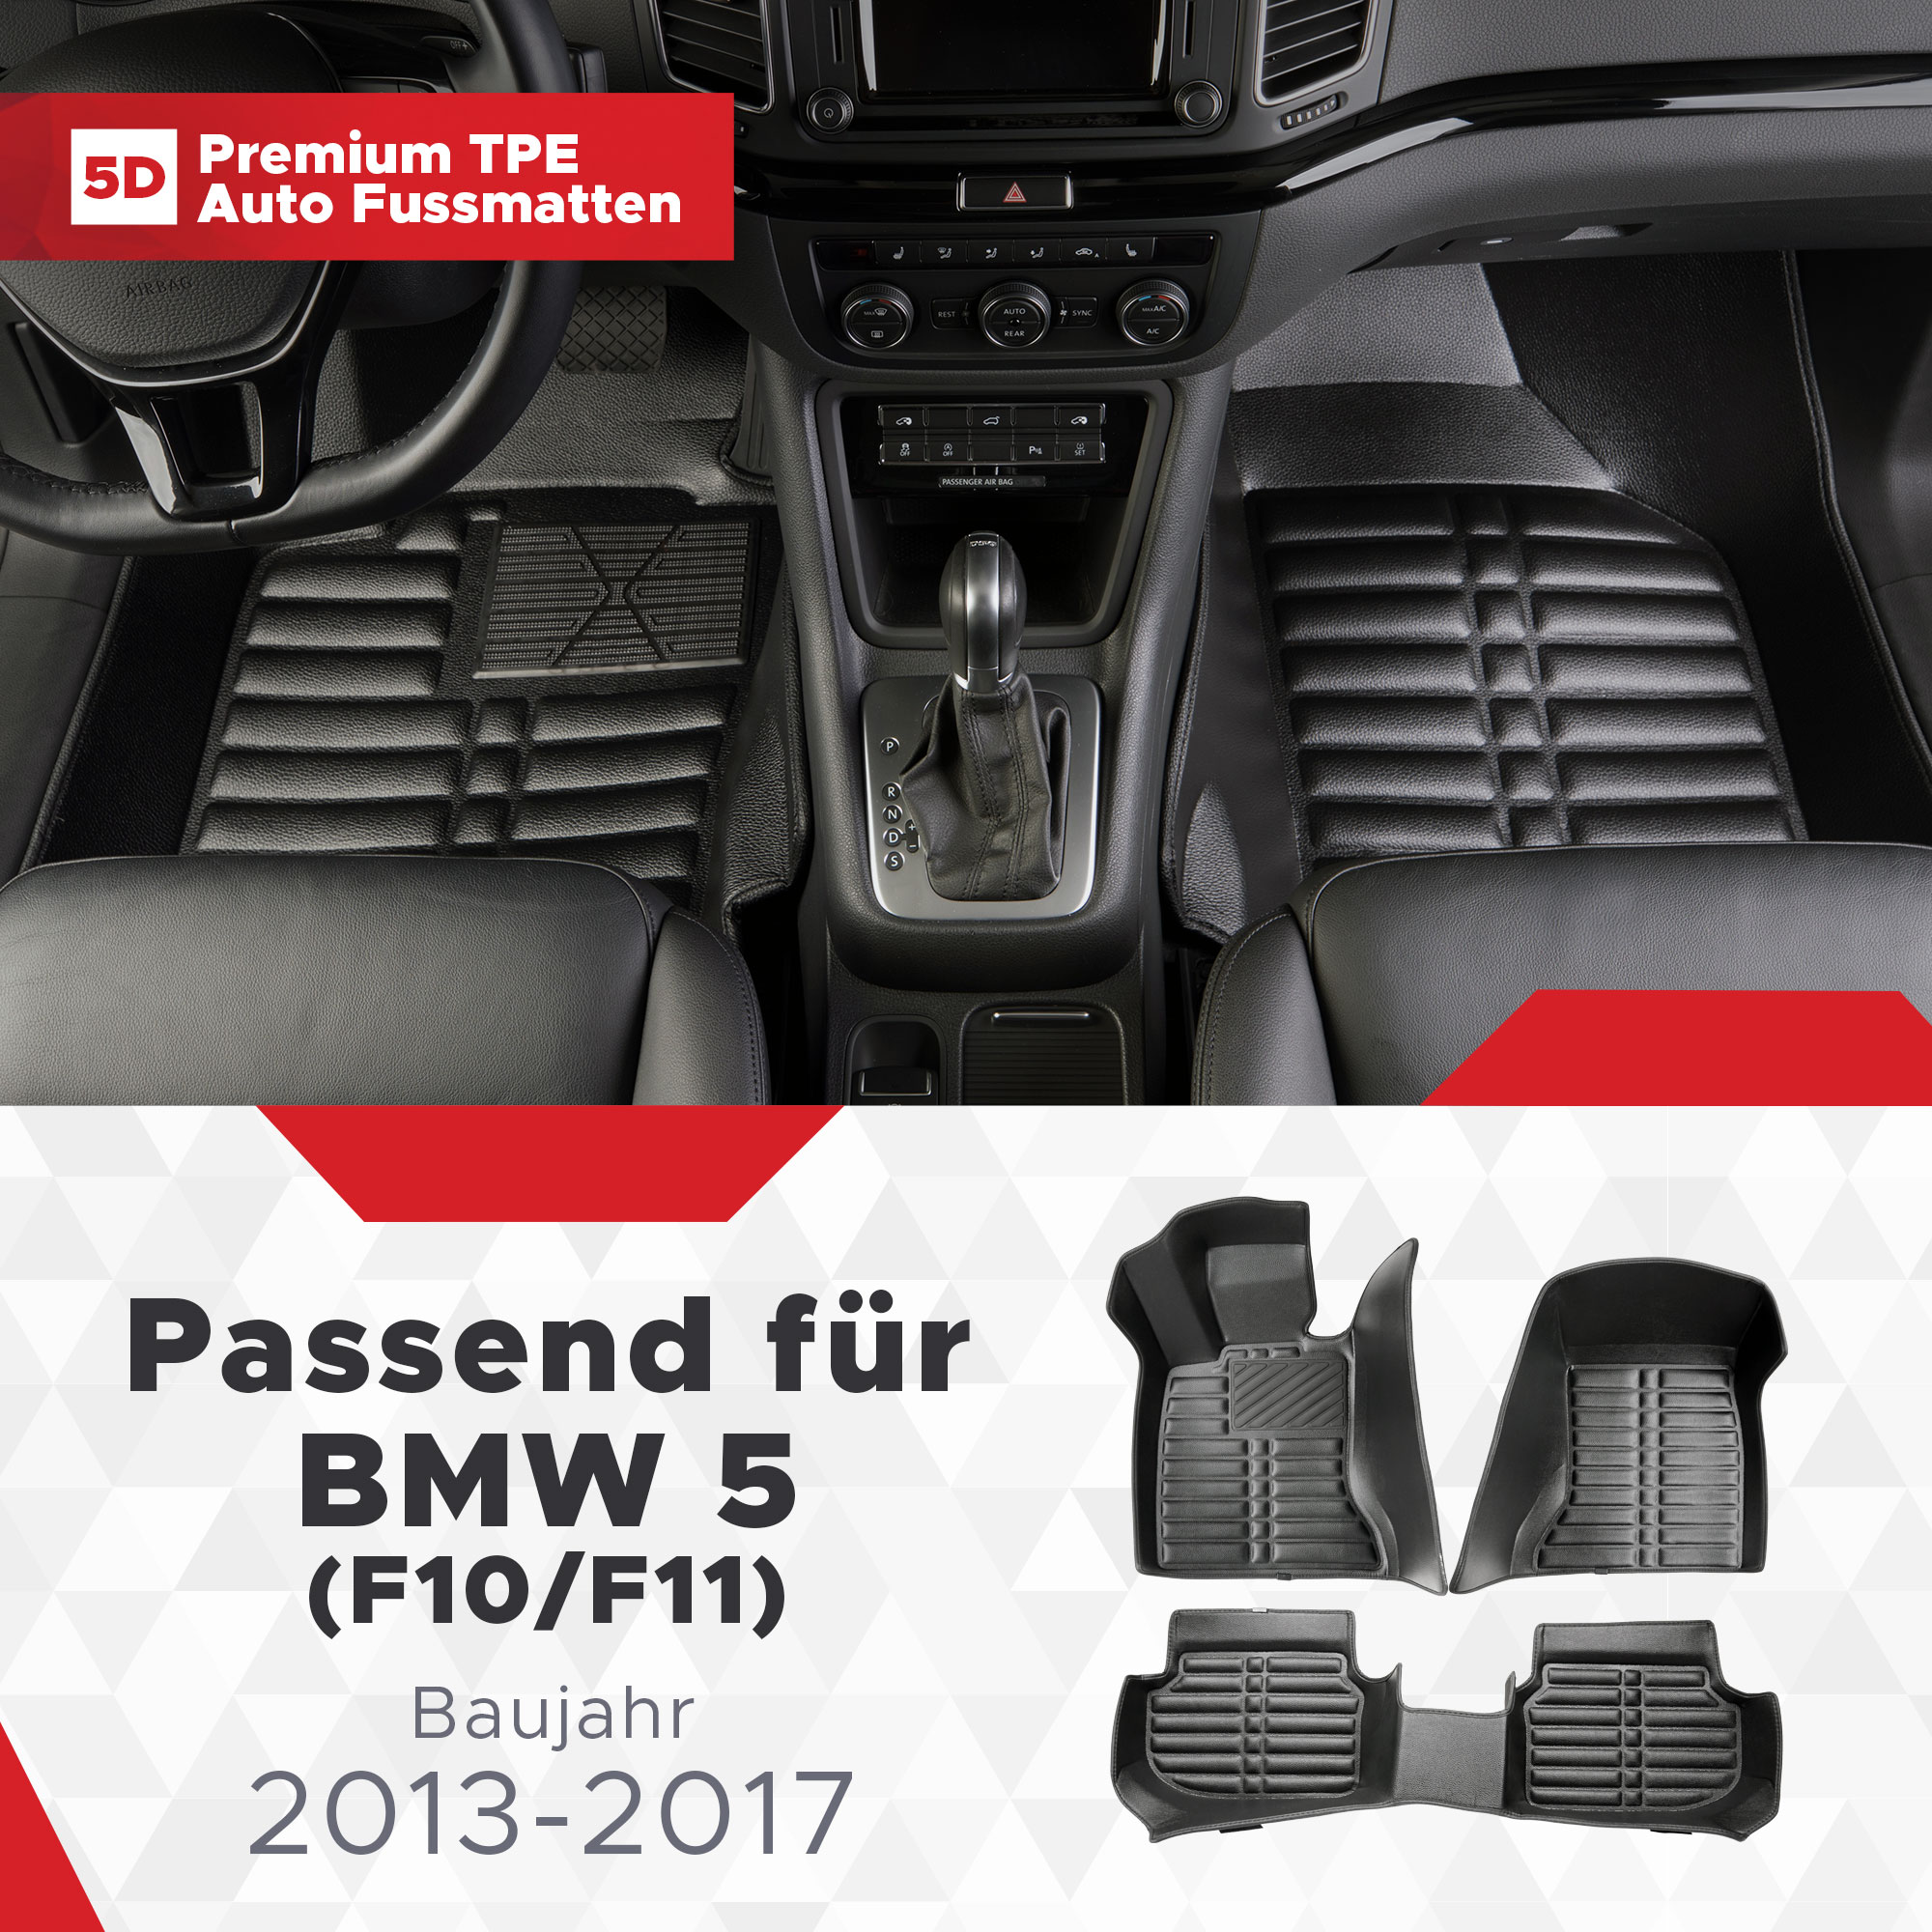 BMW (F10/F11) TPE Fussmatten 5 2013-2017 5D Bj